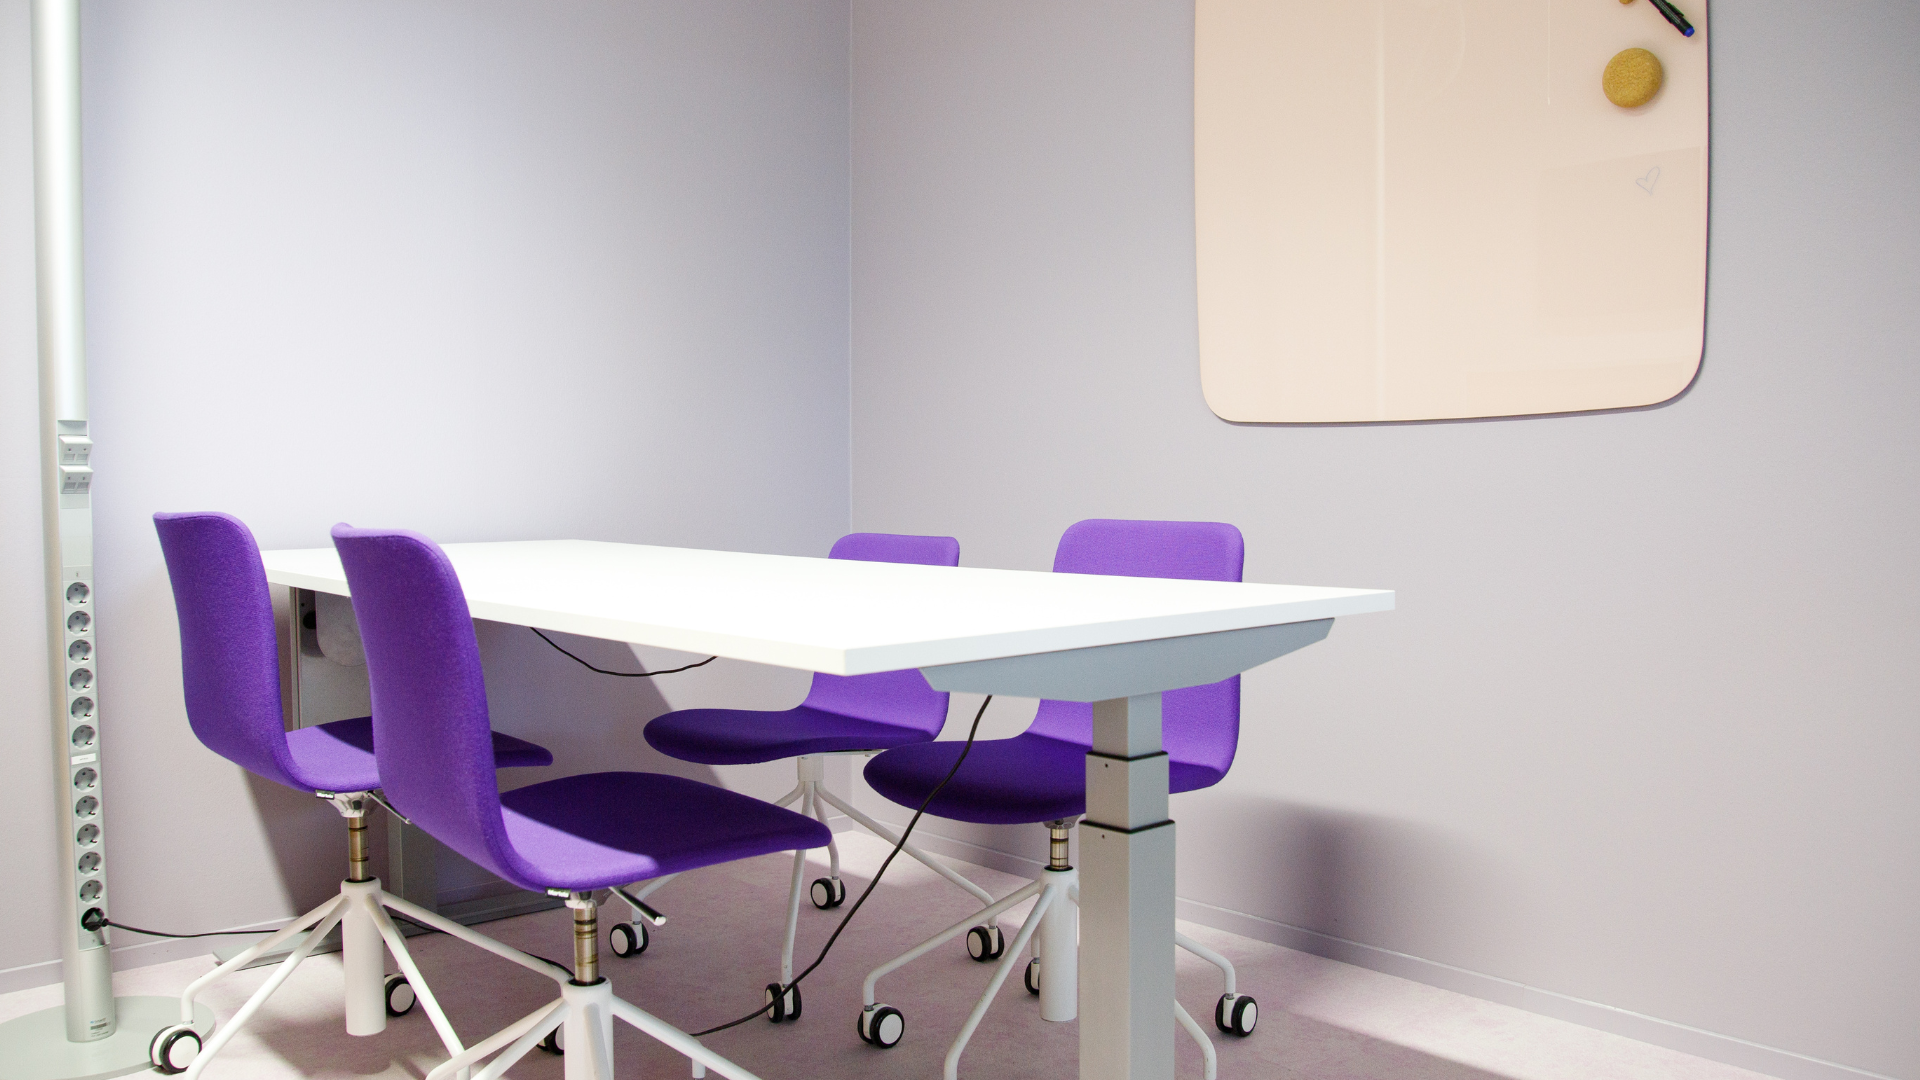 Tässä kuvassa on Meitan toimiston neuvotteluhuone, jossa on pöytä, neljä tuolia sekä tussitaulu seinällä